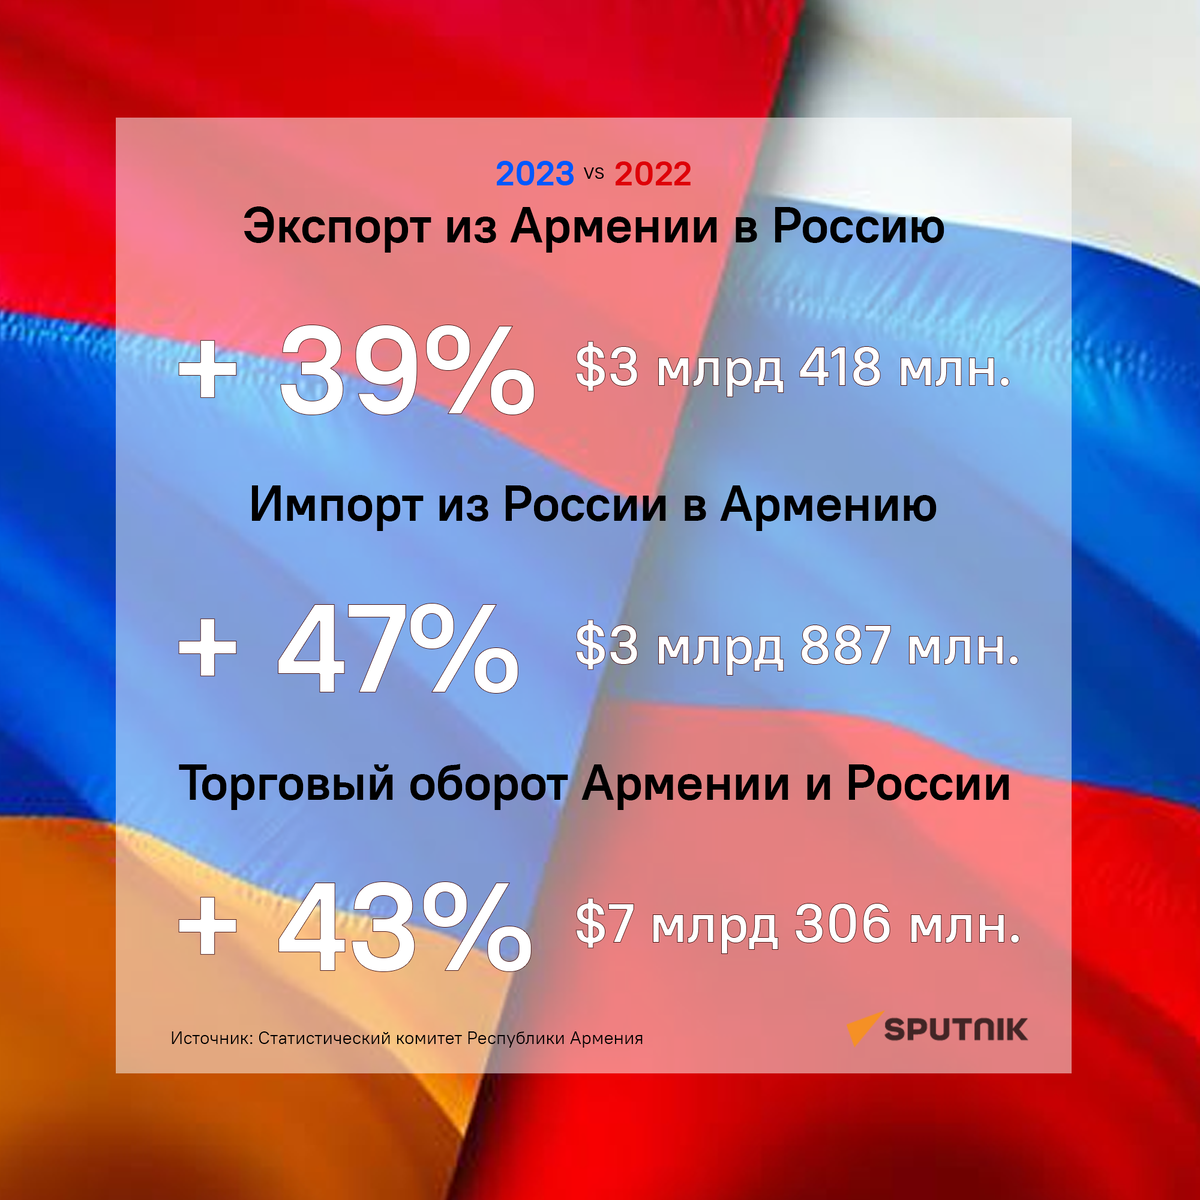 Торговый оборот Армении  и России за 2023 год вырос на 43%, достигнув $7 млрд 306 млн. Об этом  свидетельствуют данные Национального статкомитета за 2023 год.-2